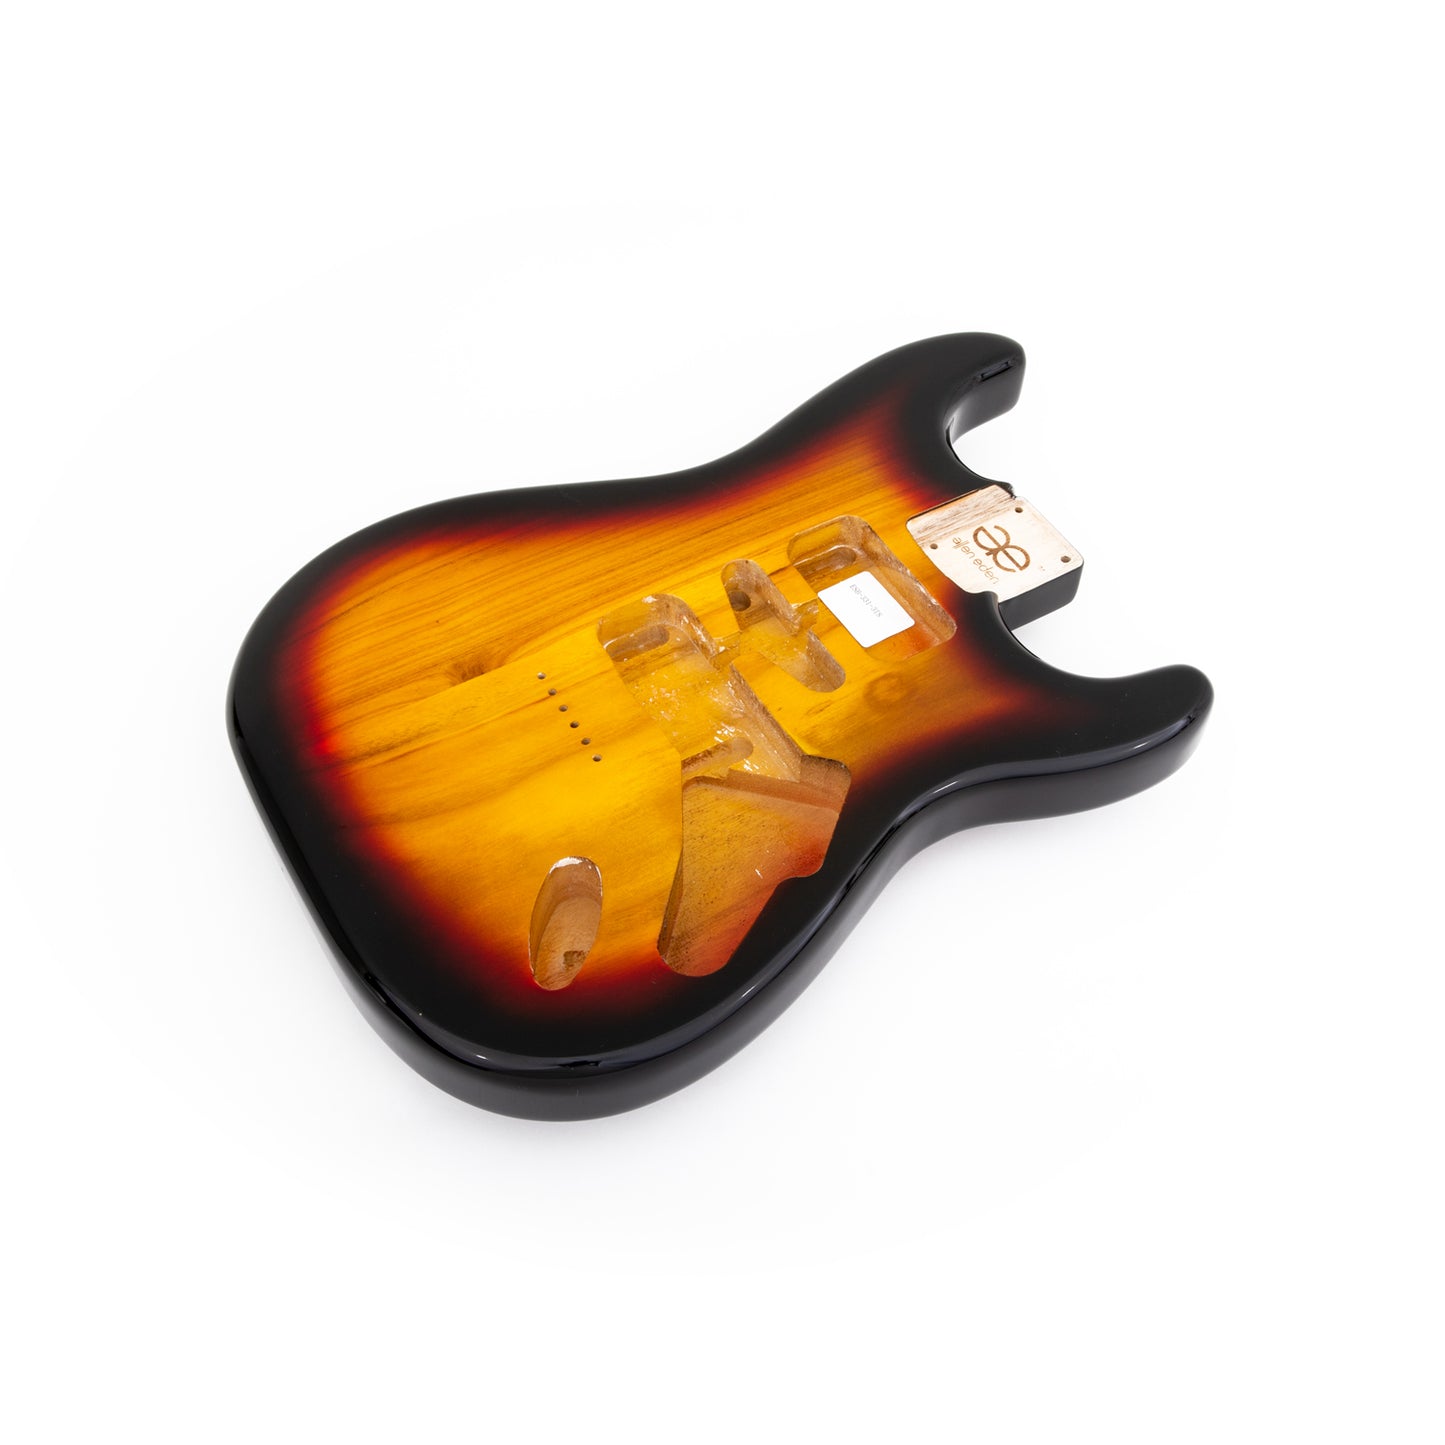 AE Guitars® S-Style Paulownia Replacement Guitar Body 3-Tone Sunburst